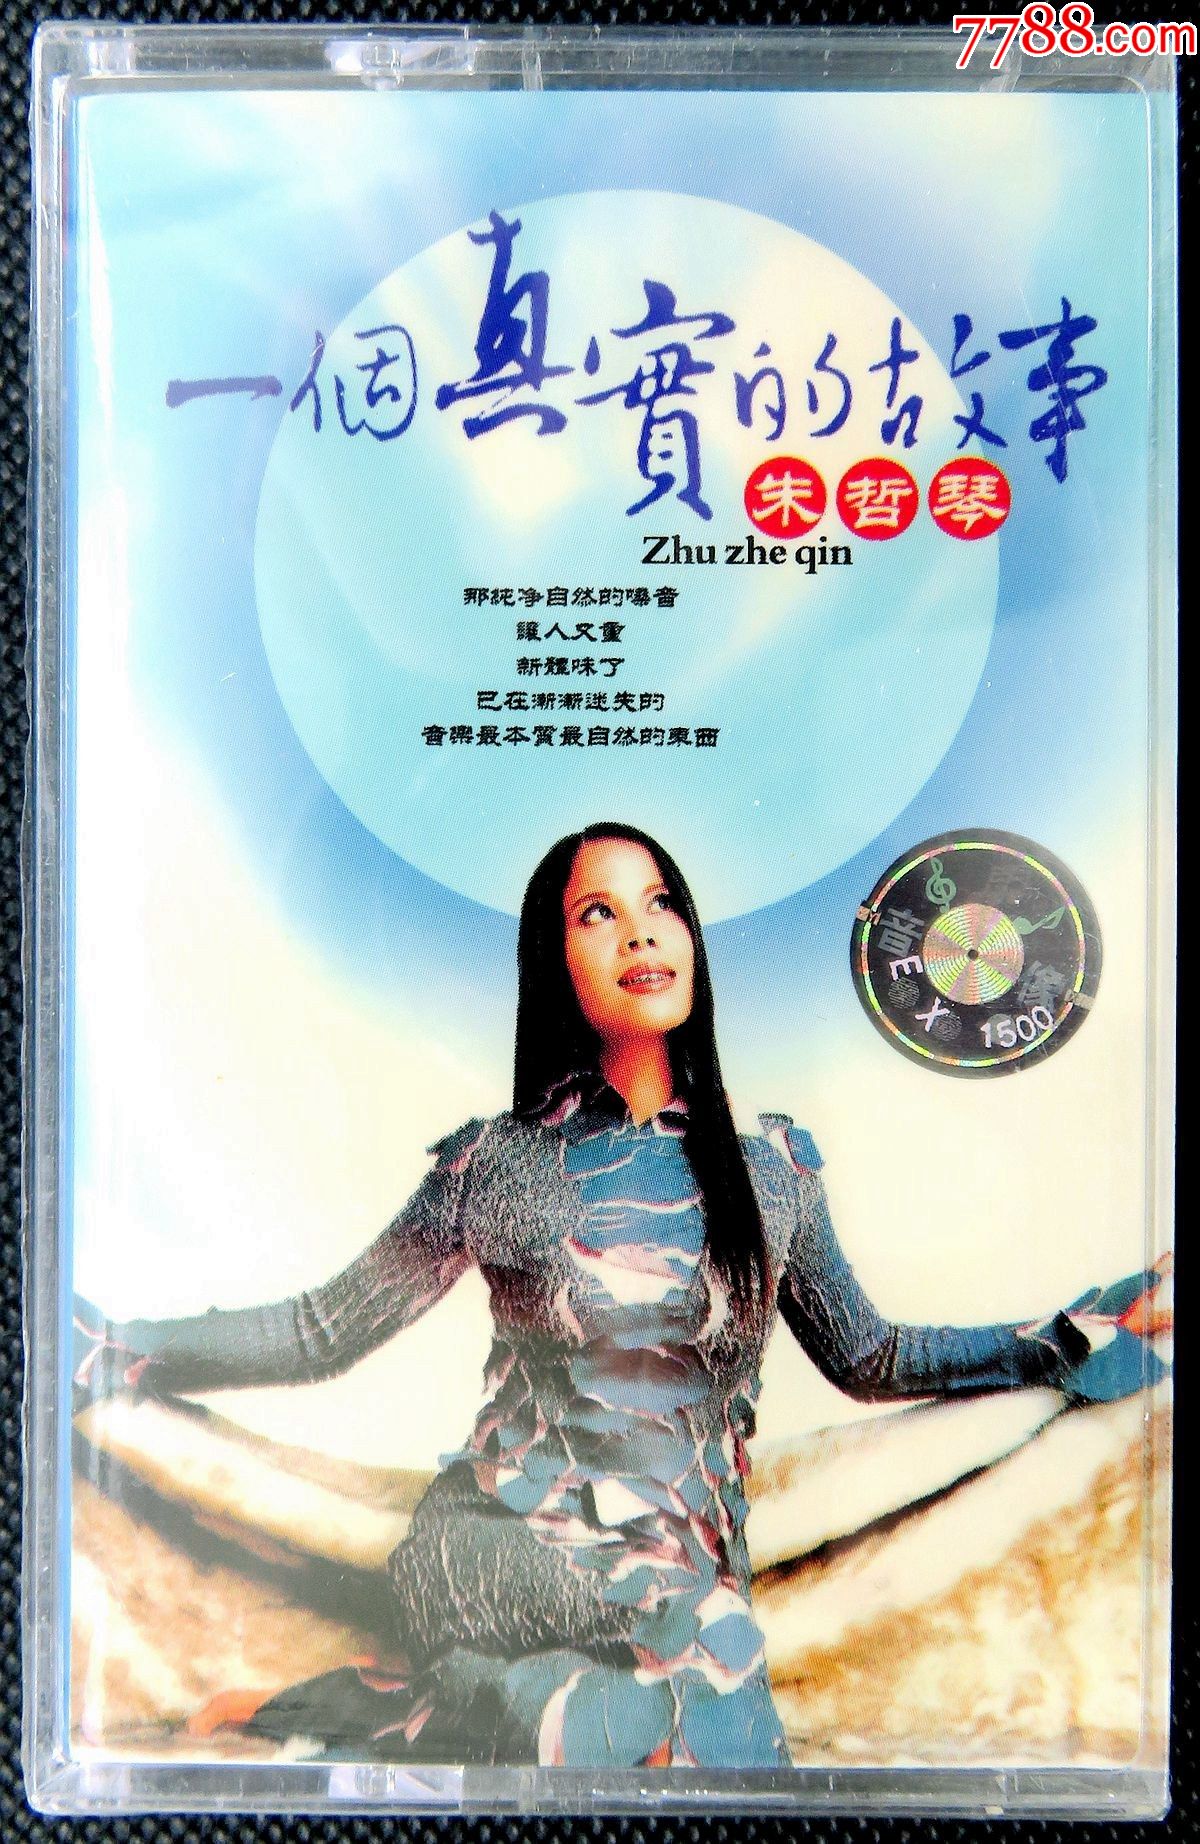 绝版经典珍藏卡带朱哲琴一个真实的故事全新原版磁带